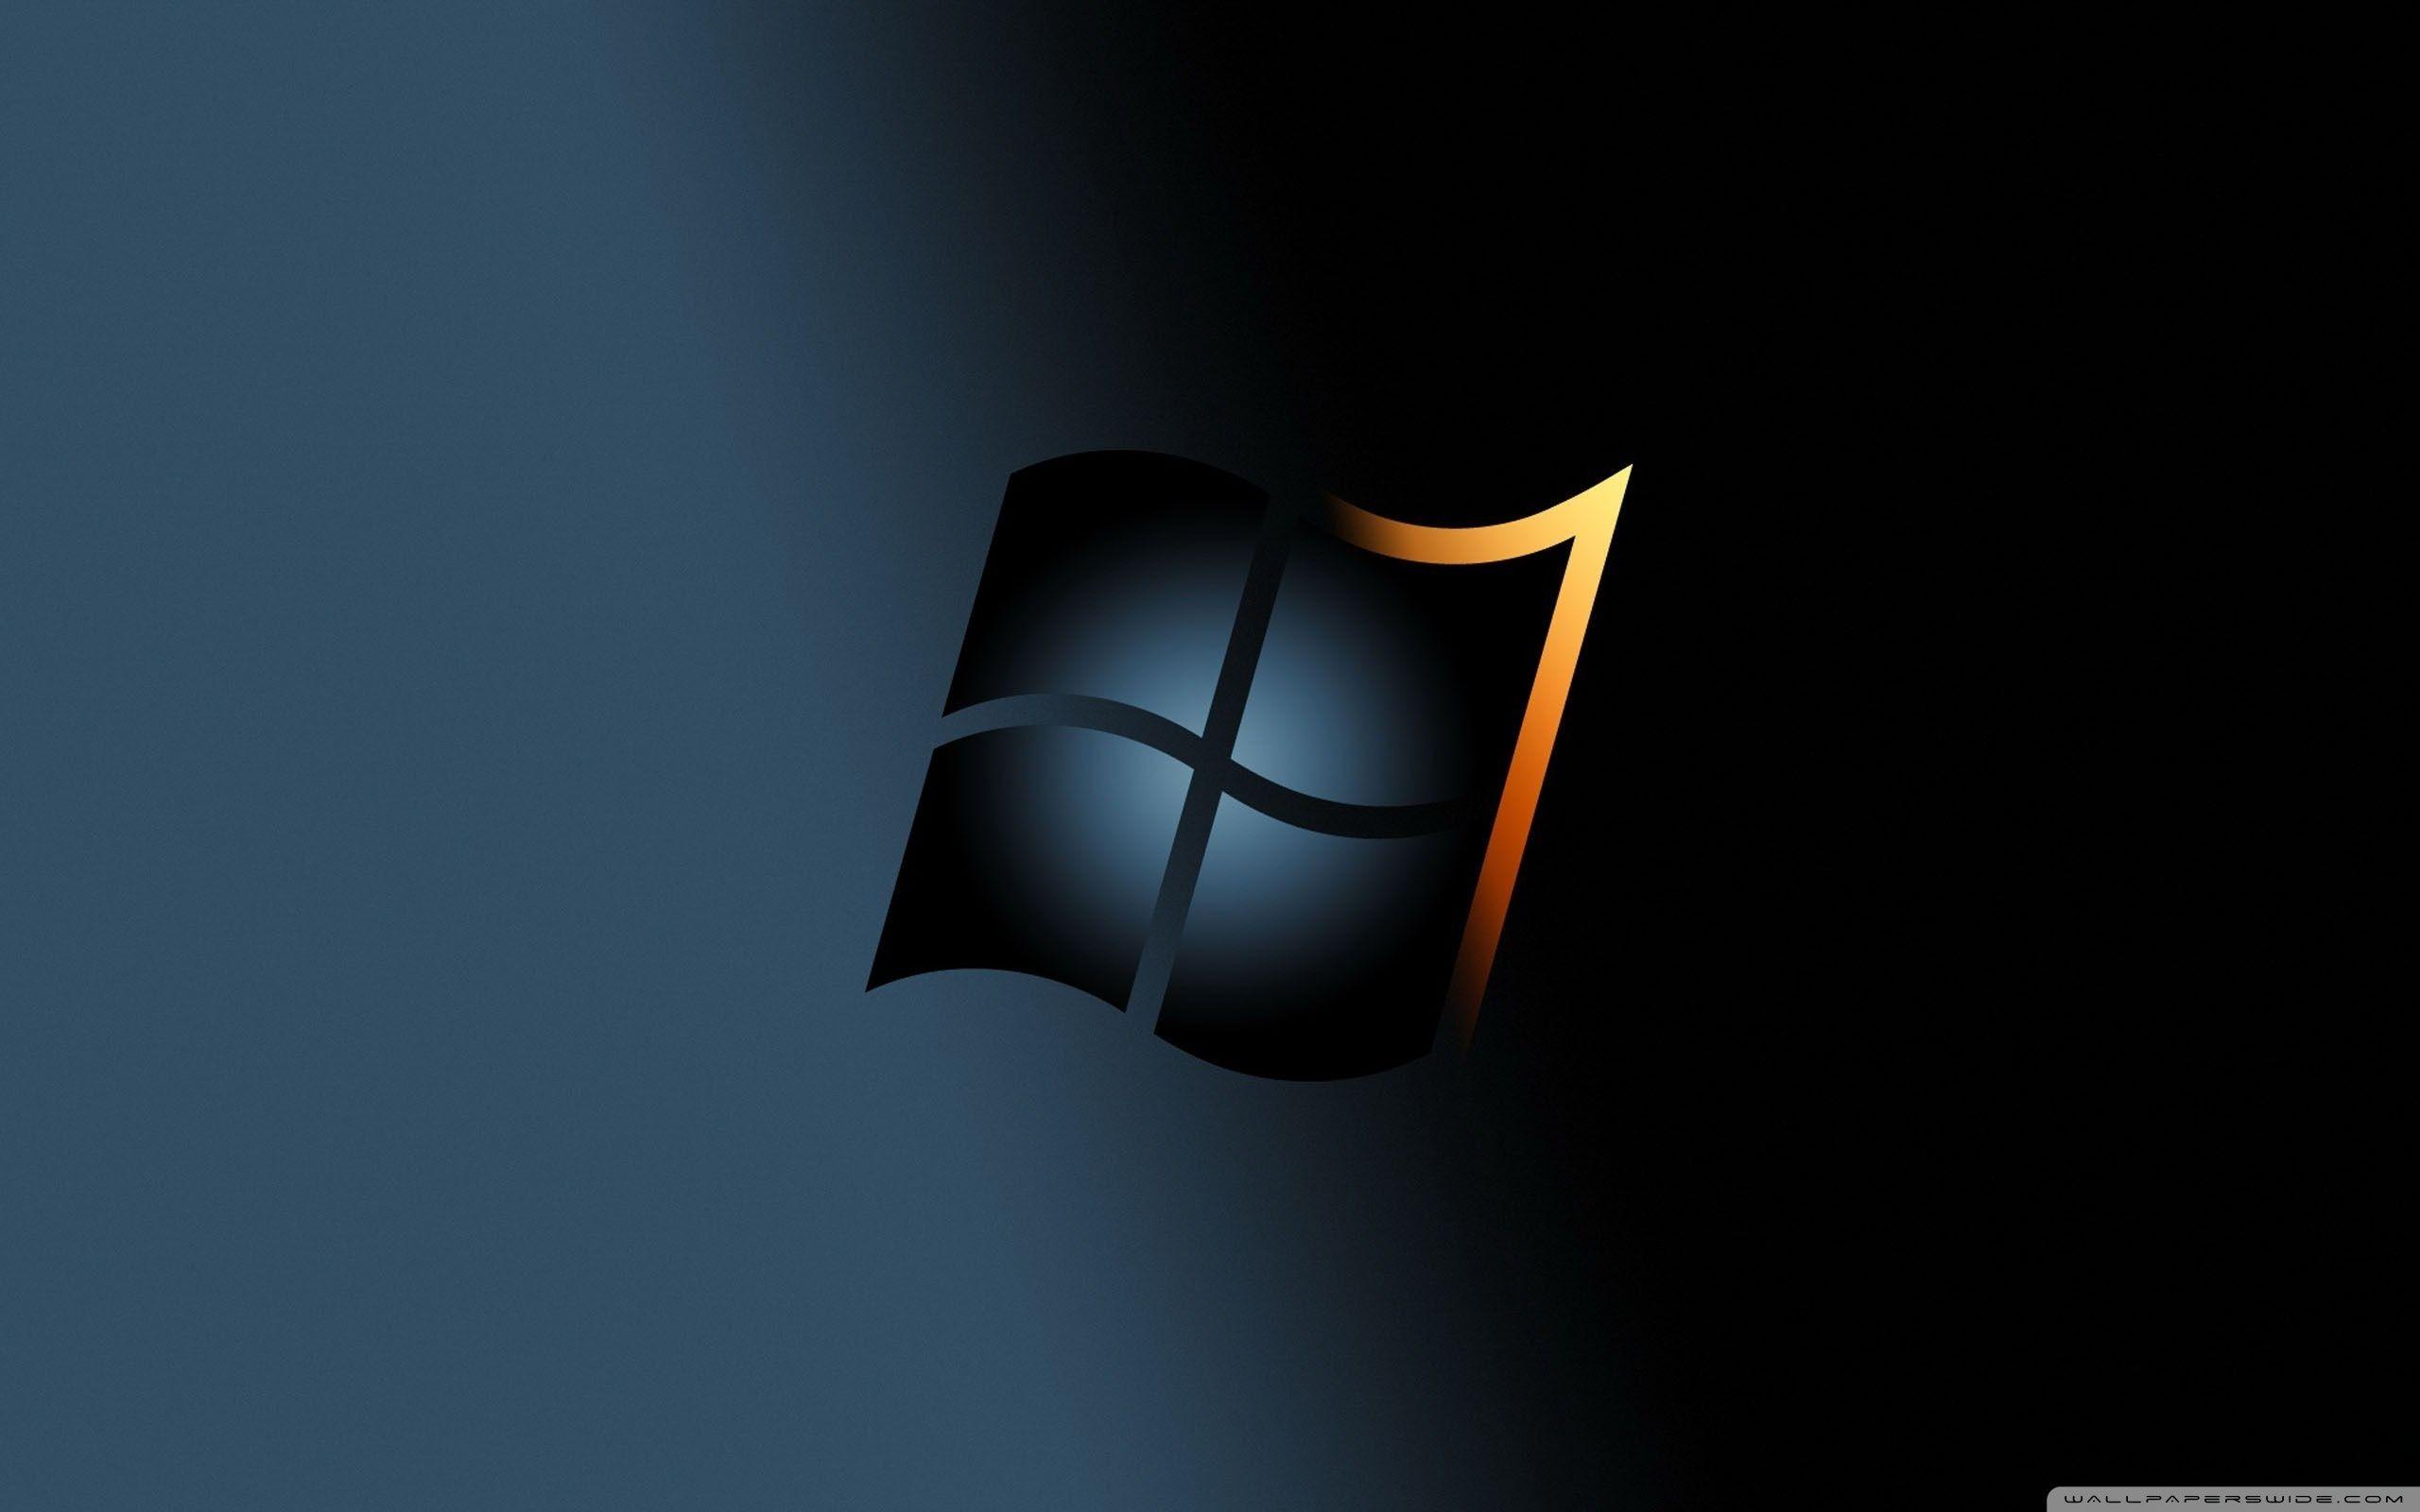 Windows 7 Professional Desktop Wallpapers Top Free Windows 7 Professional Desktop Backgrounds Wallpaperaccess